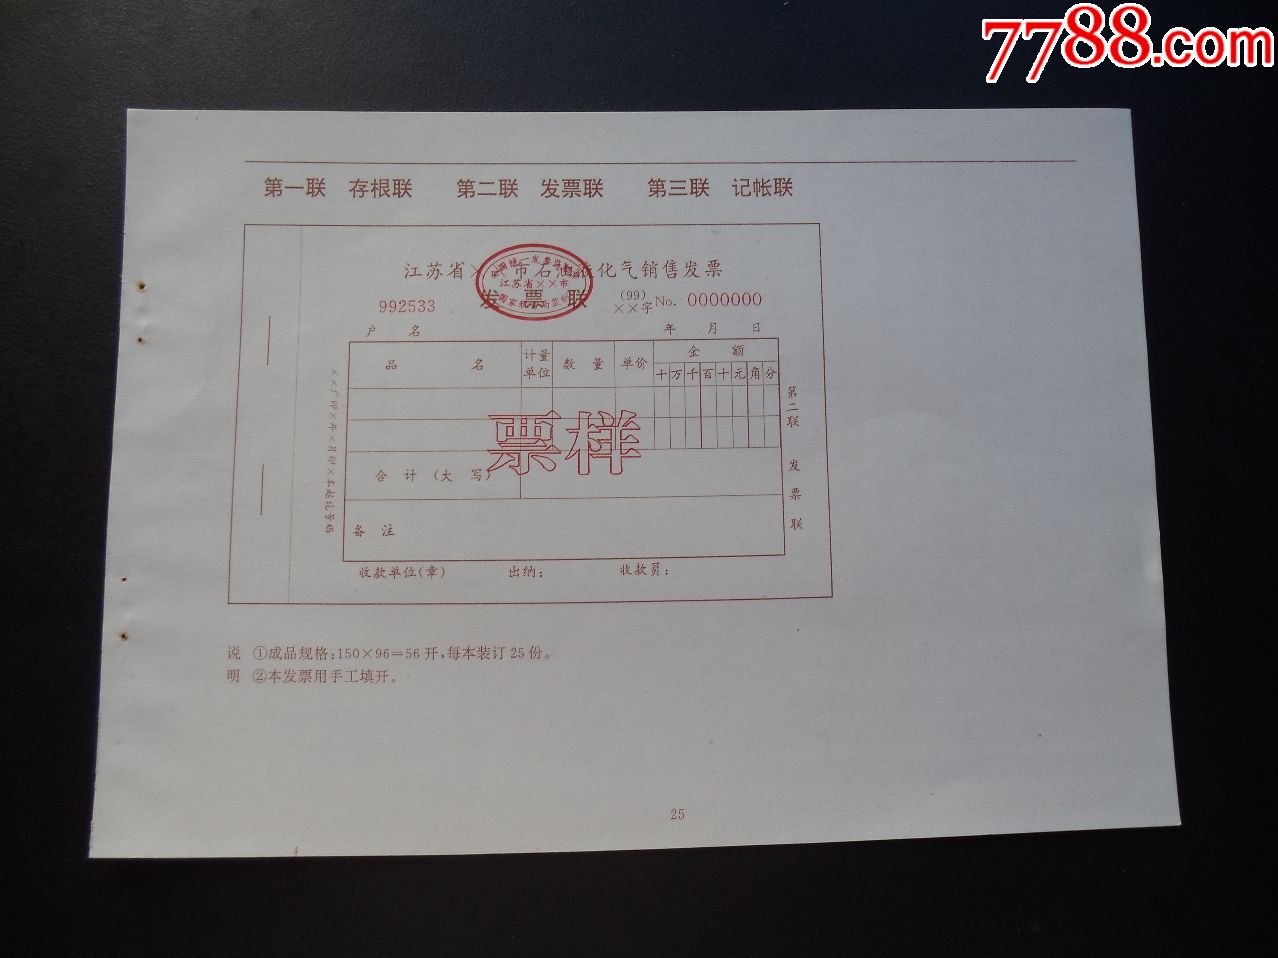 1999年江苏省石油液化气销售发票样票